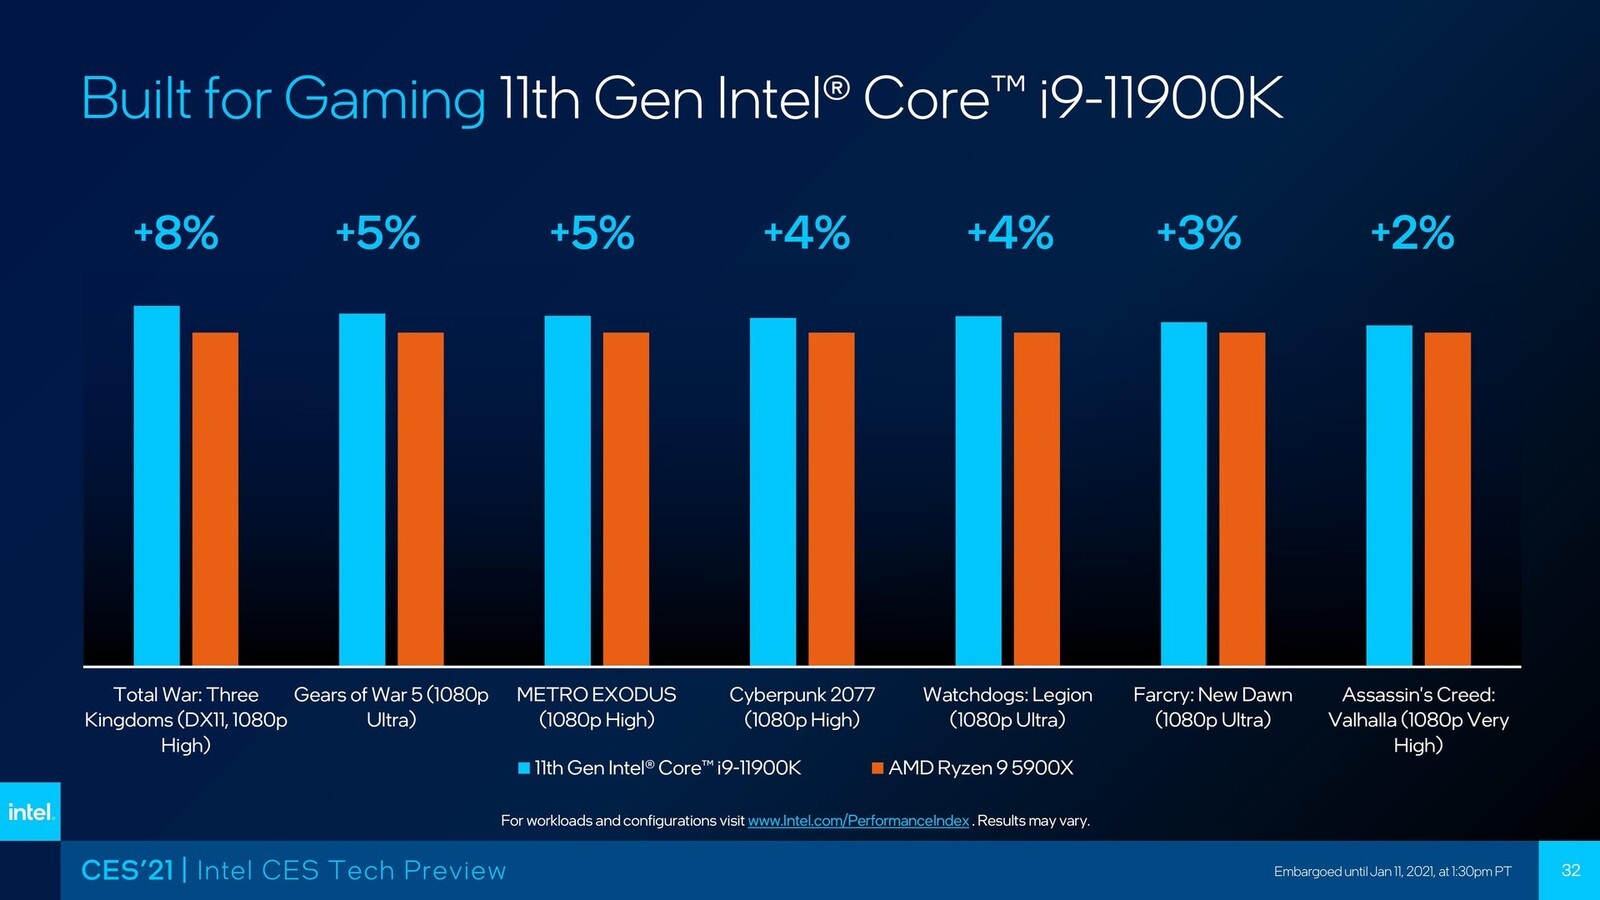 AMD Ryzen 9 5900X Vs. Core i9-10900K: Is Intel Finally Beaten?